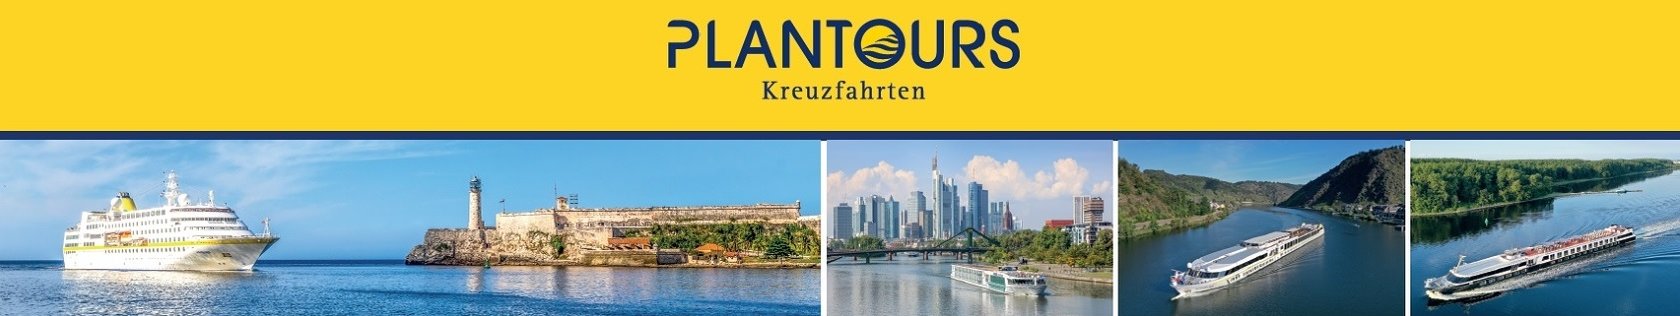 Titelbild Jobs in Bremen_Plantours Kreuzfahrten_